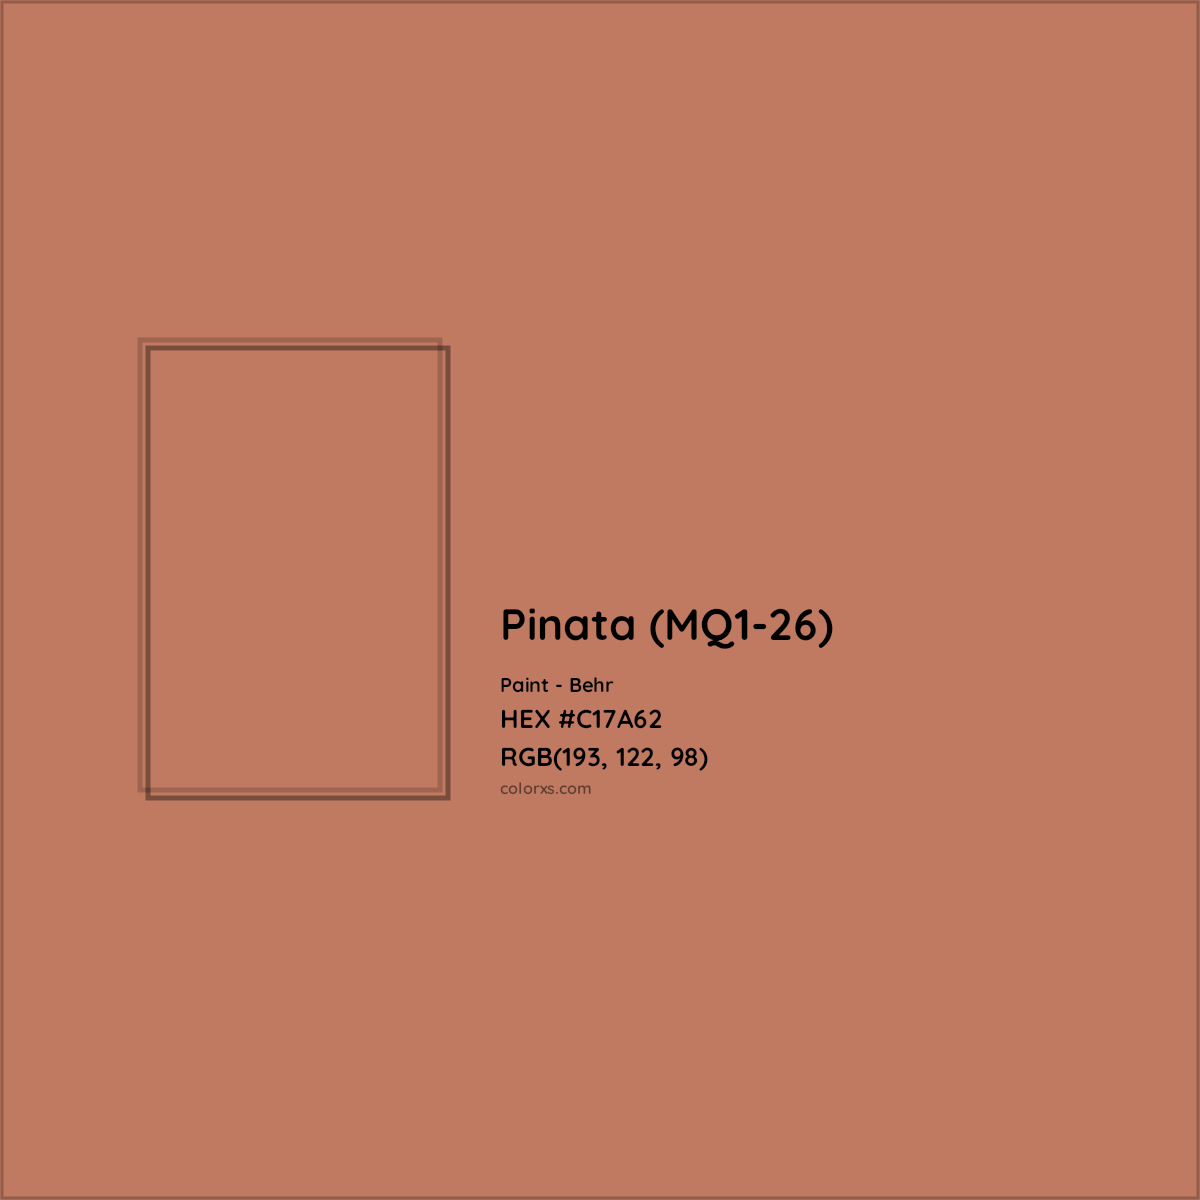 HEX #C17A62 Pinata (MQ1-26) Paint Behr - Color Code